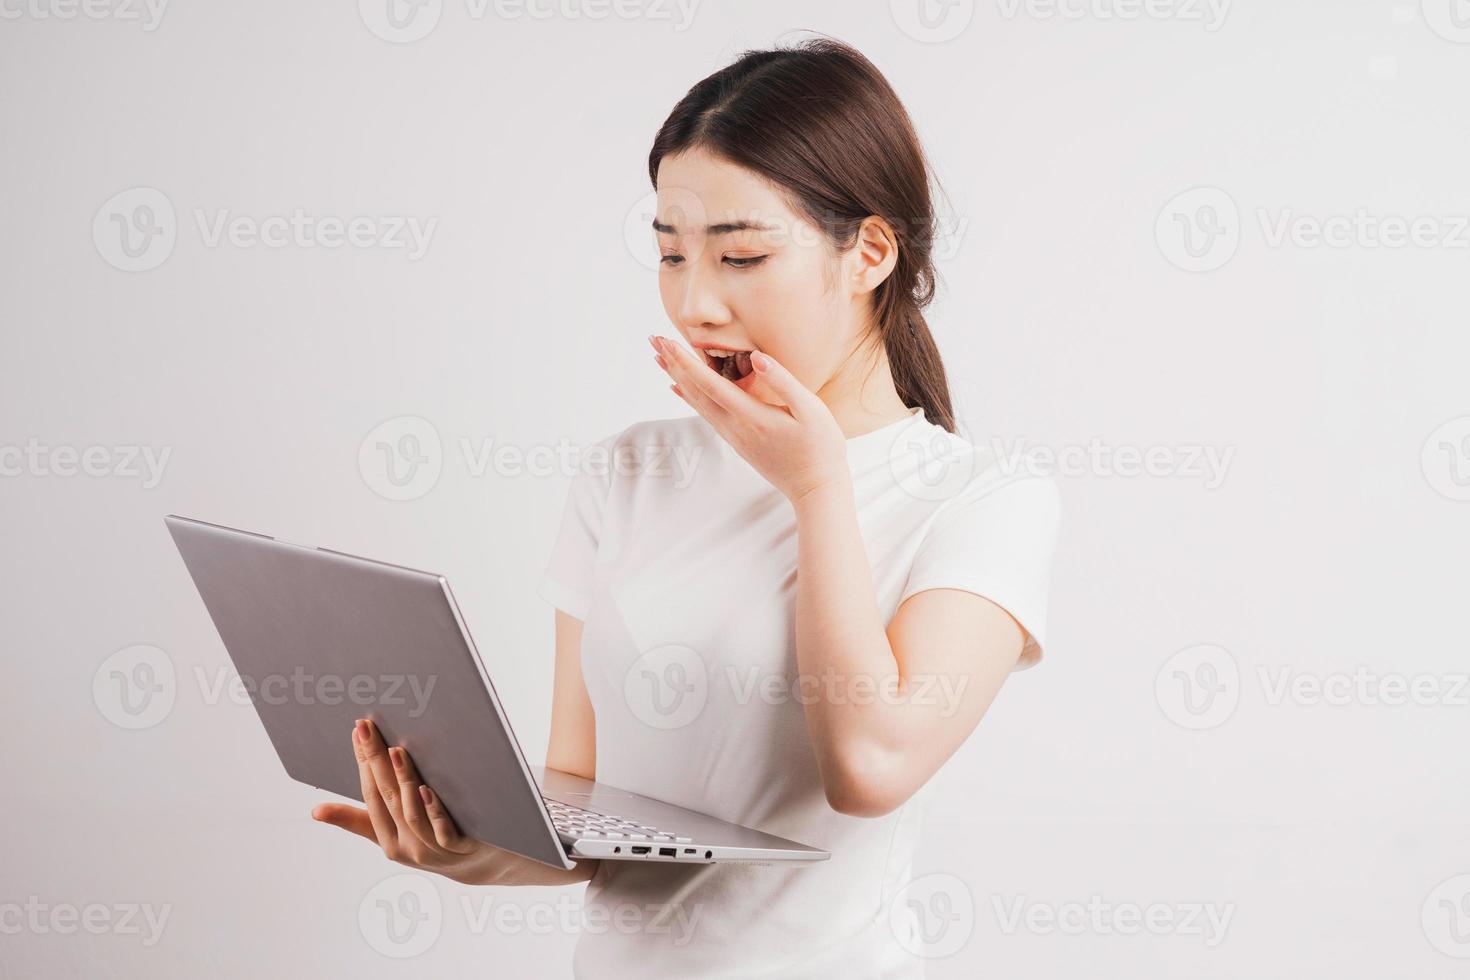 retrato de uma jovem segurando o computador no fundo branco foto